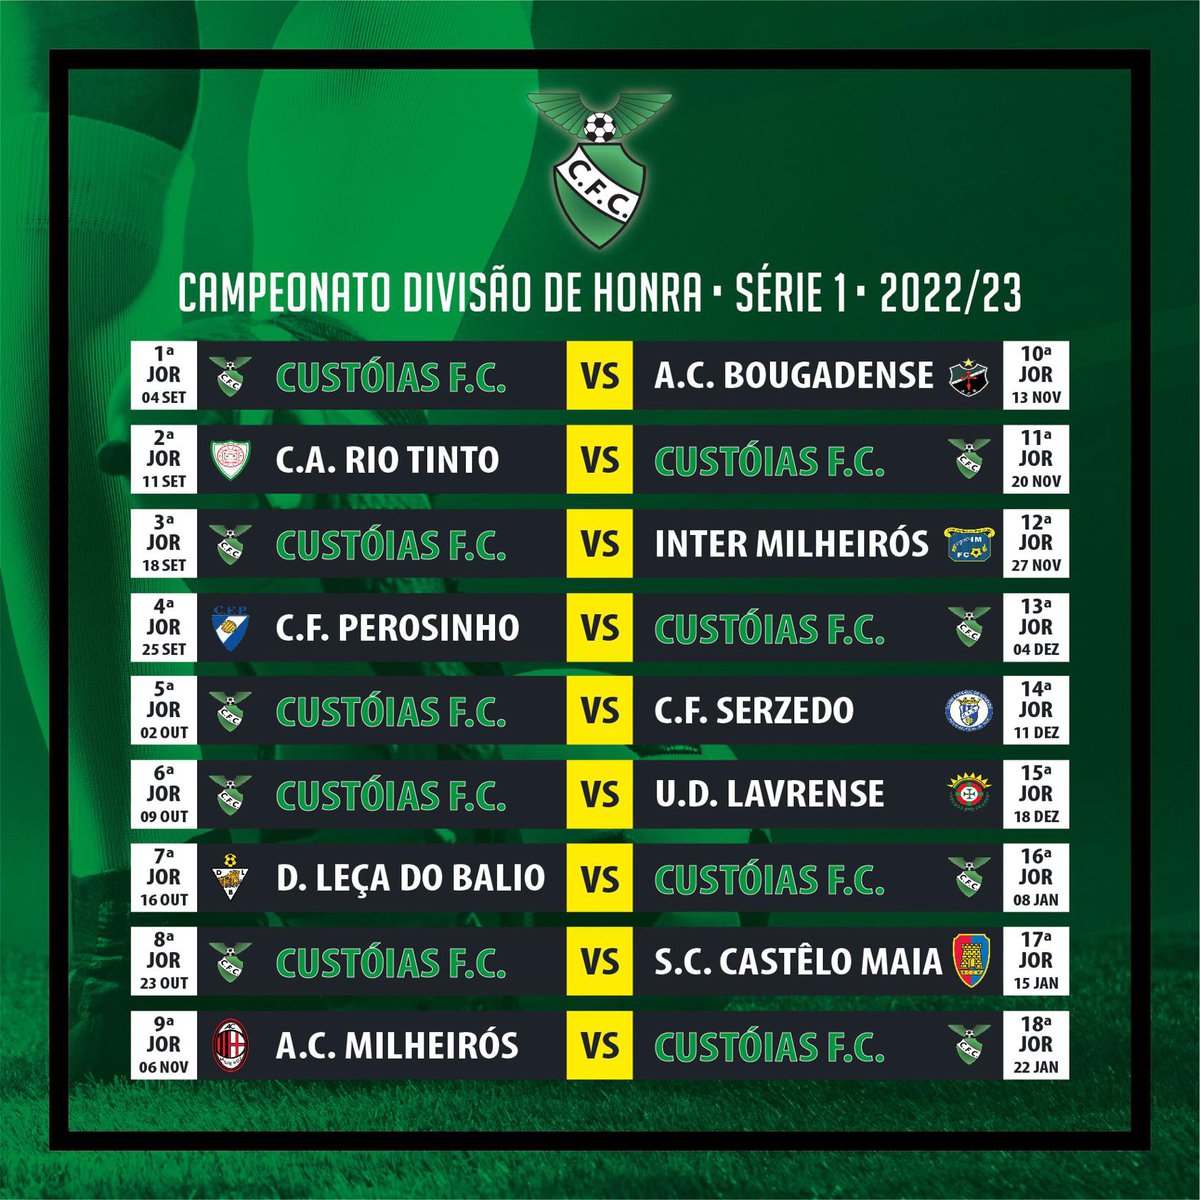 CALENDÁRIO SENIORES DIVISÃO DE HONRA SÉRIE 1 2022/23